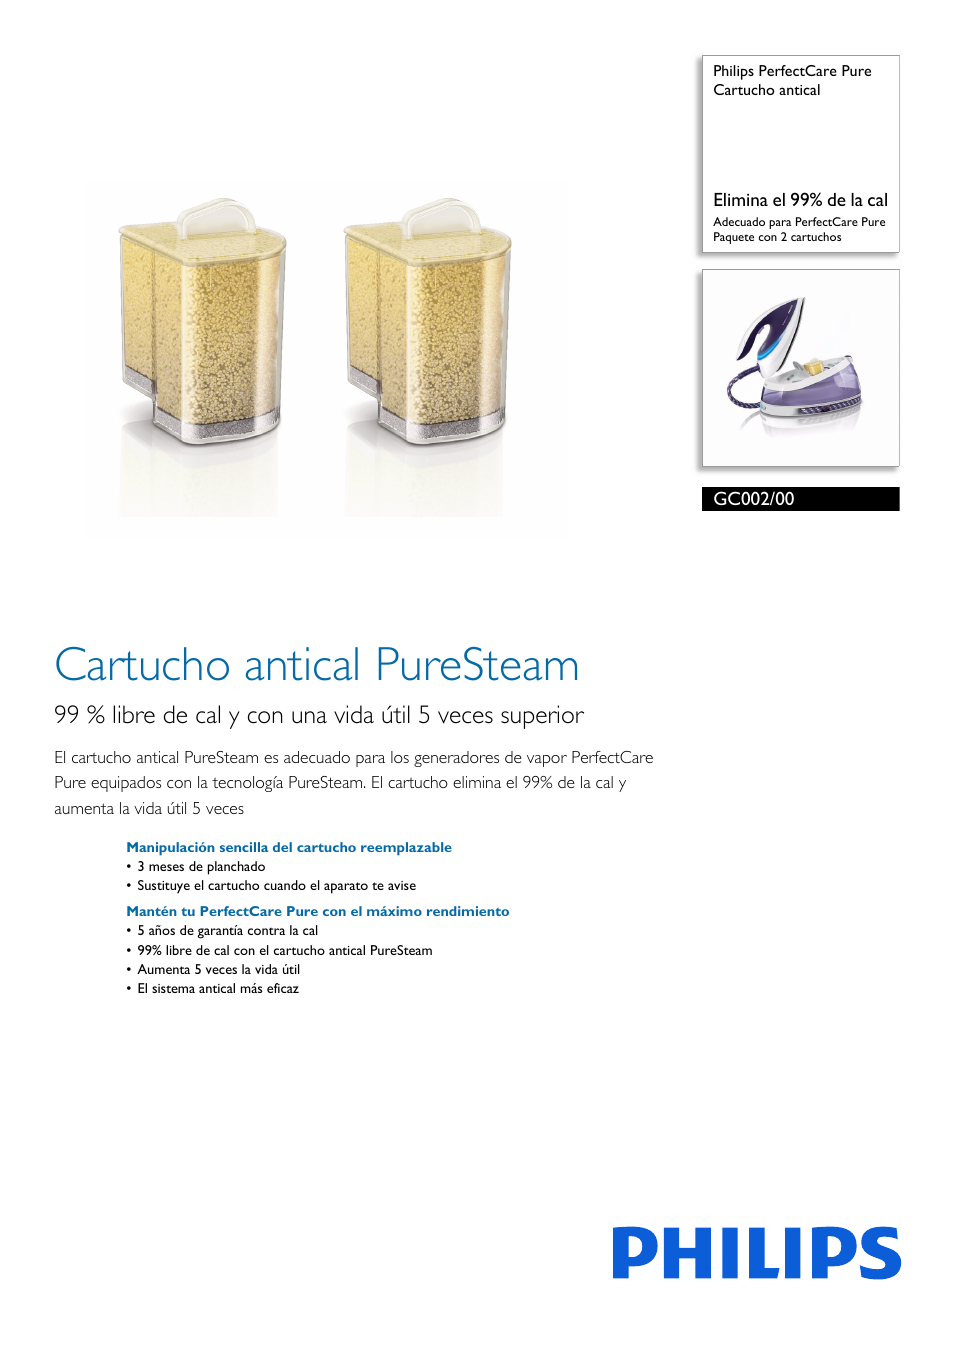 Cartucho antical PerfectCare Pure paquete con 2 cartuchos Philips GC002/00 elimina el 99% de la cal 